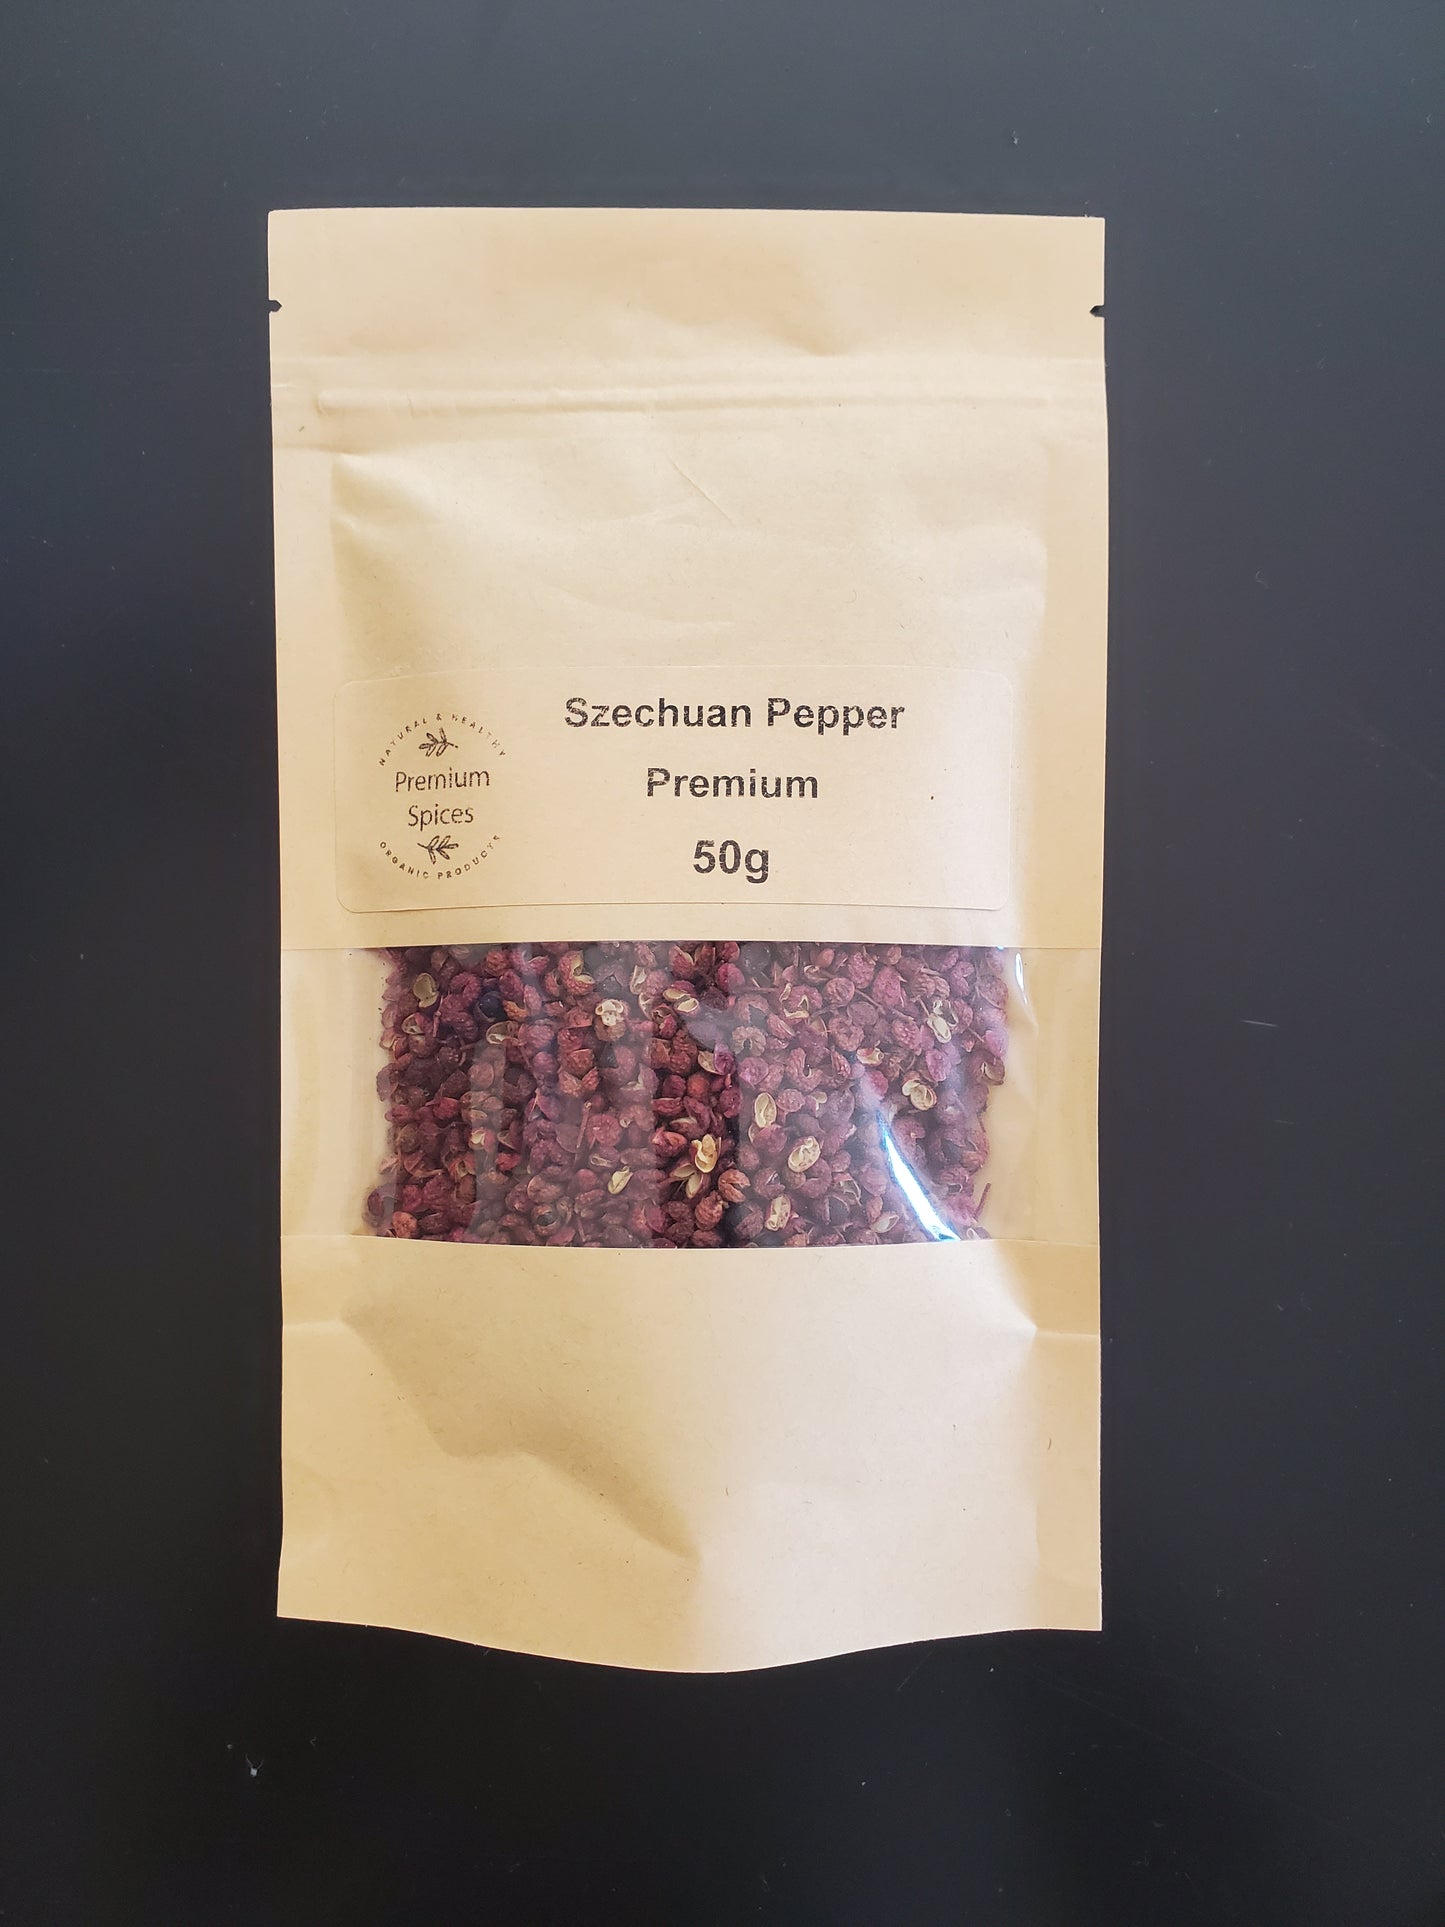 Premium Szechuan Pepper